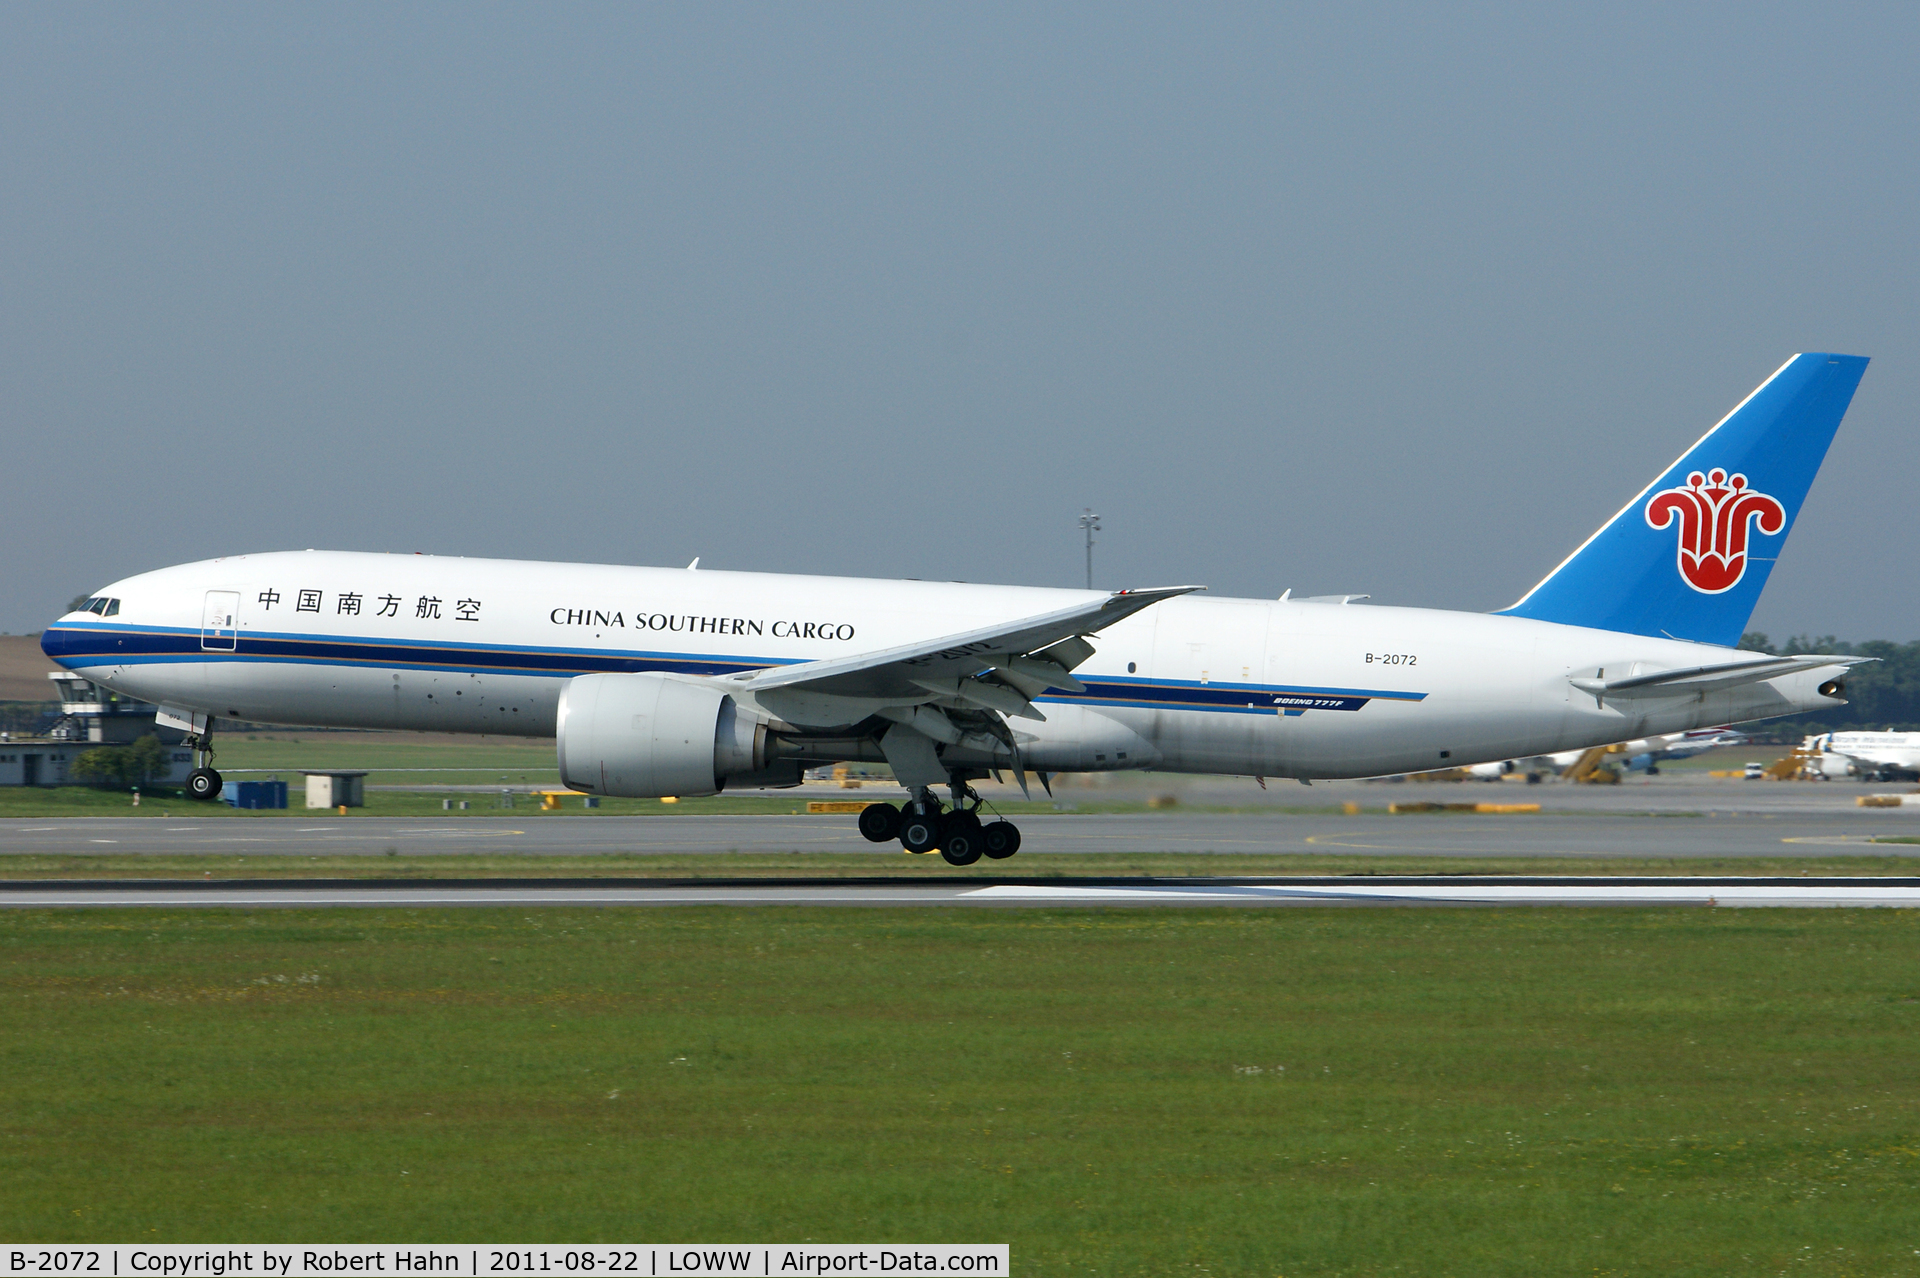 B-2072, 2009 Boeing 777-F1B C/N 37310, Touchdown RWY16